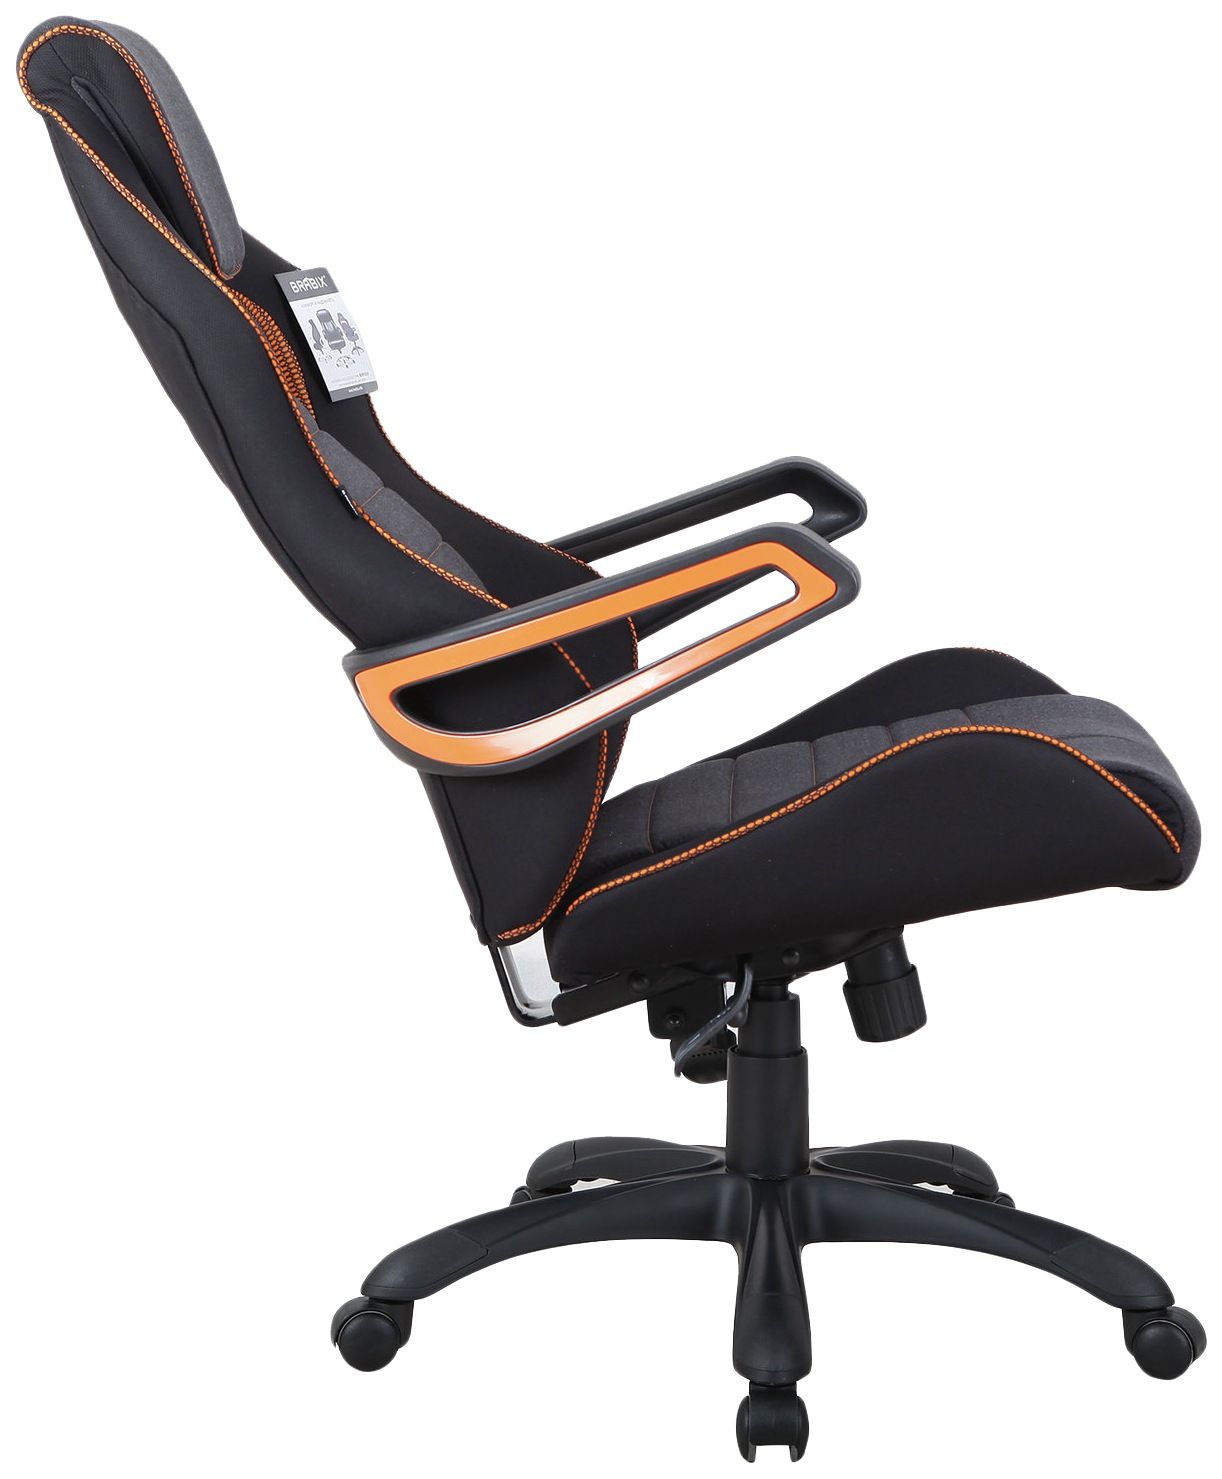 Компьютерное кресло Brabix Techno Pro GM-003, серый/черный